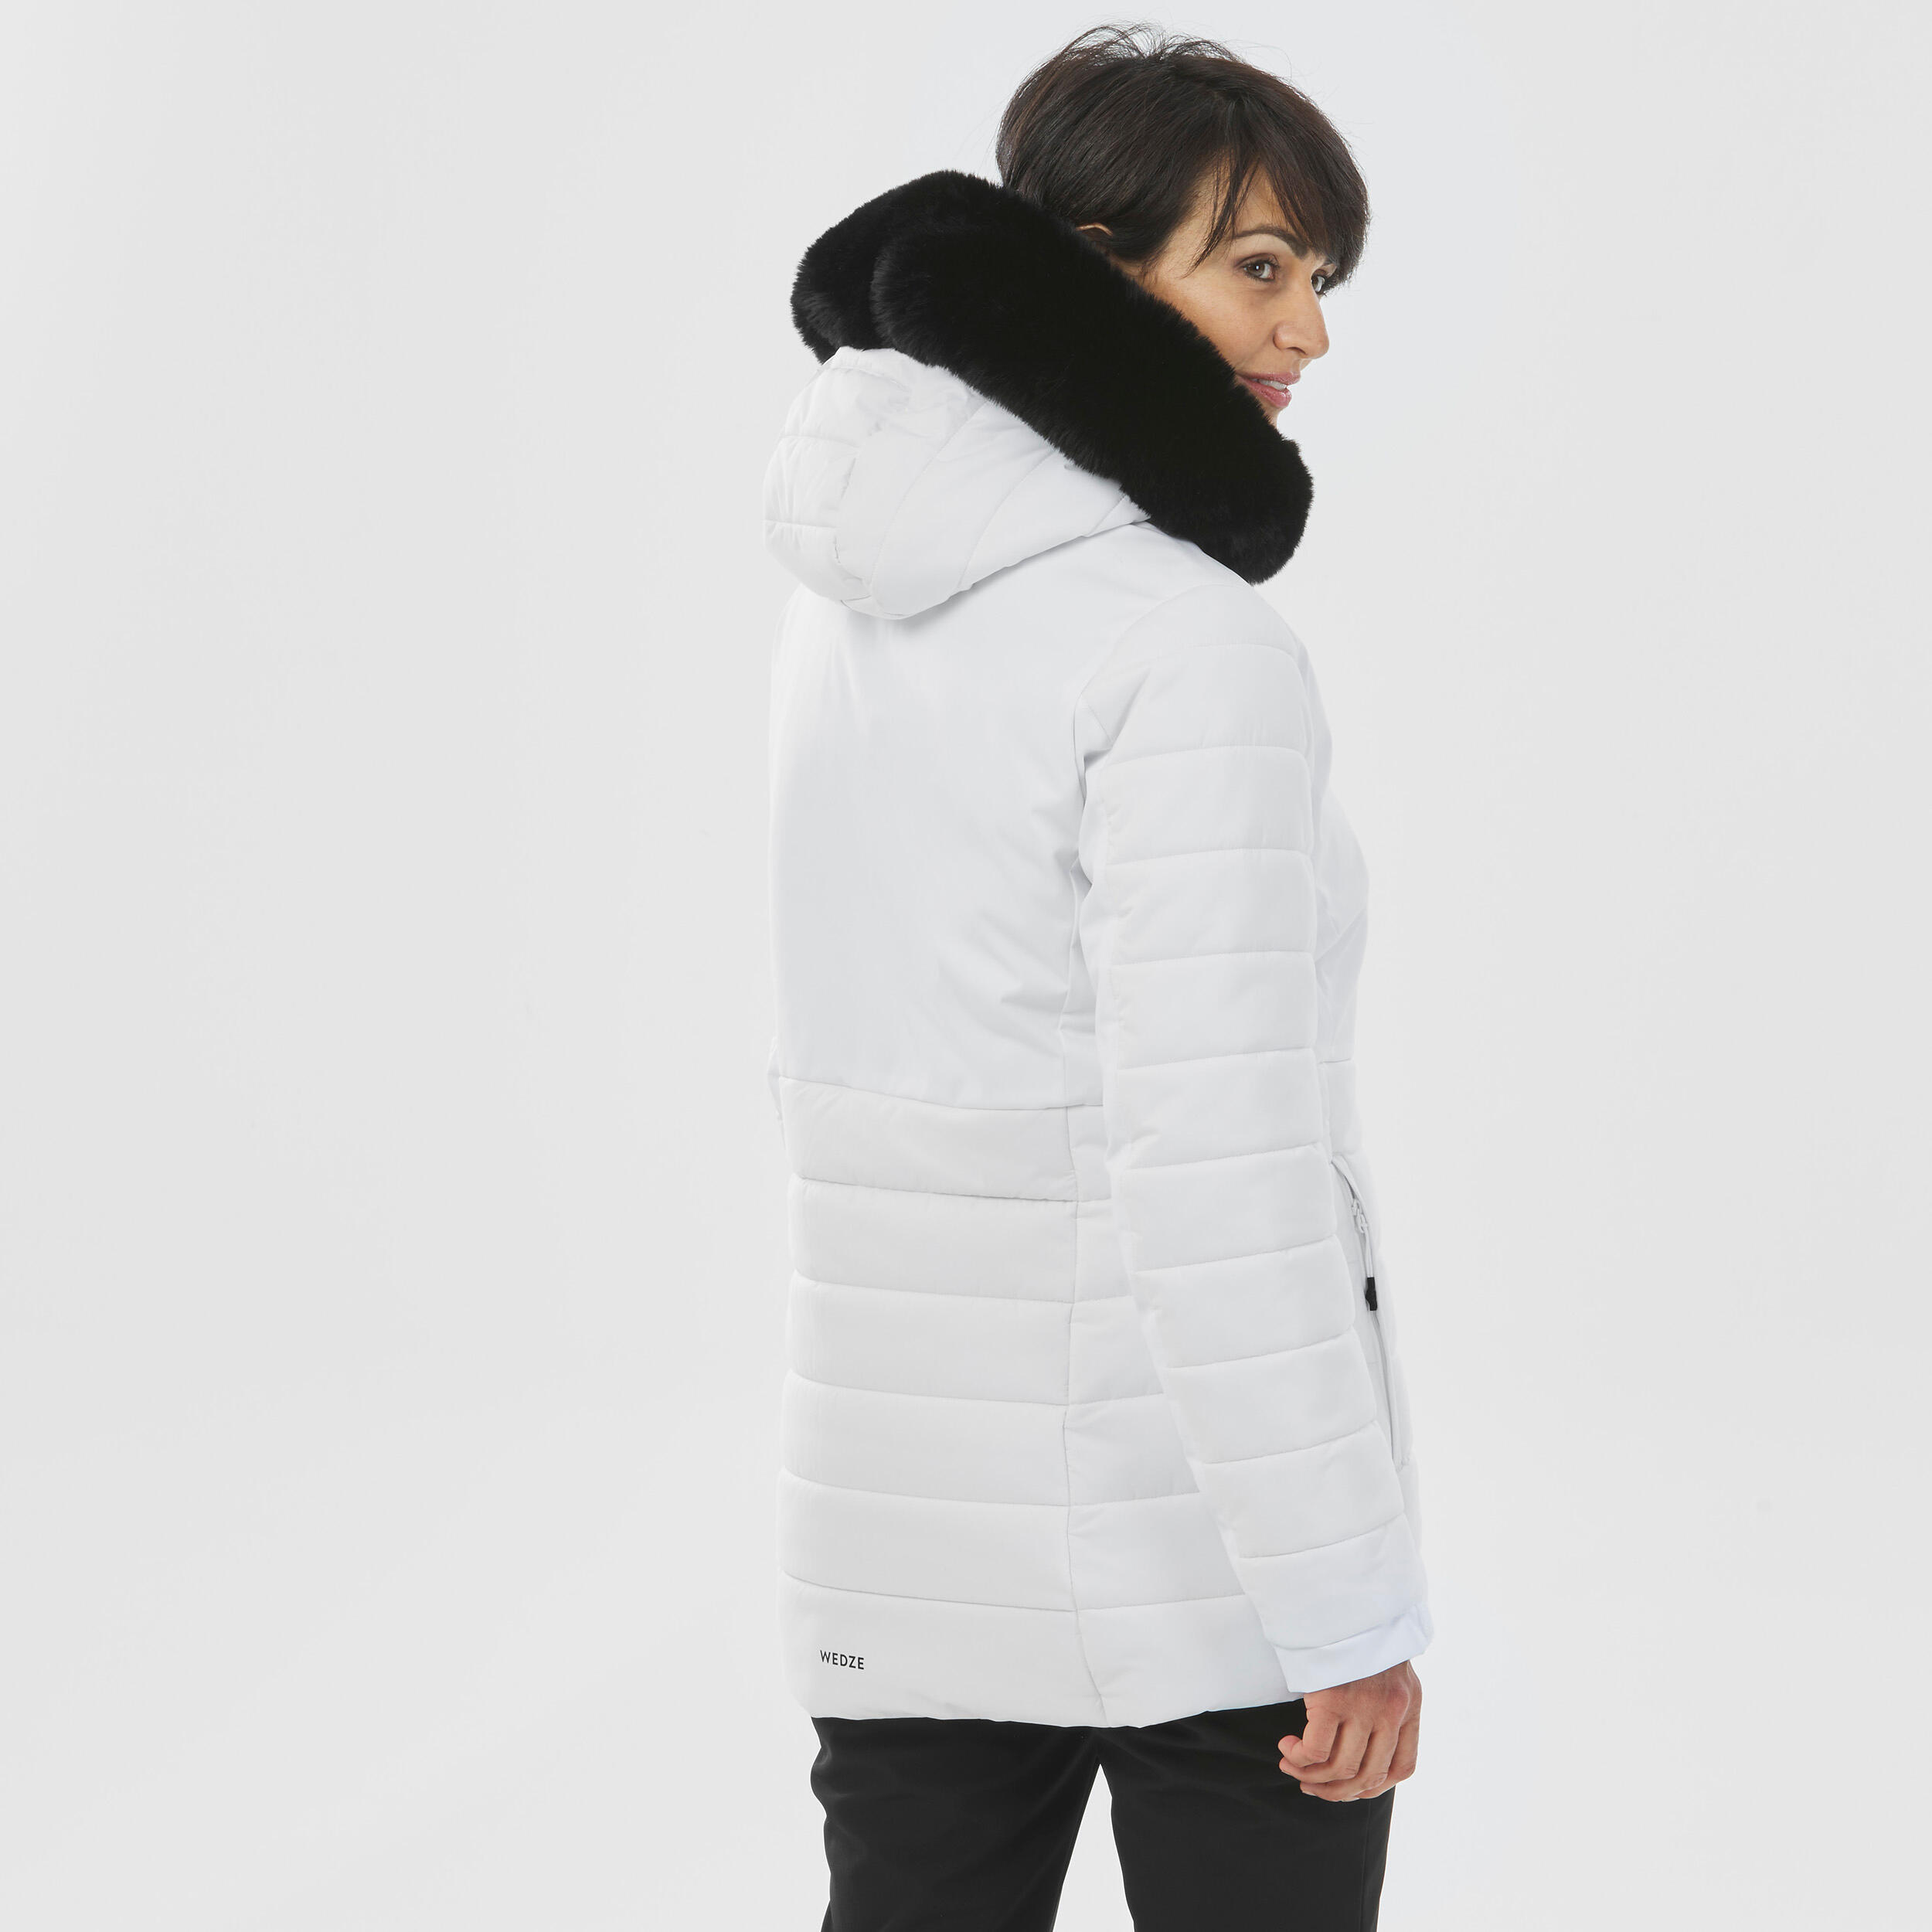 Women's Mid-Length Warm Ski Jacket 100 - White 6/13